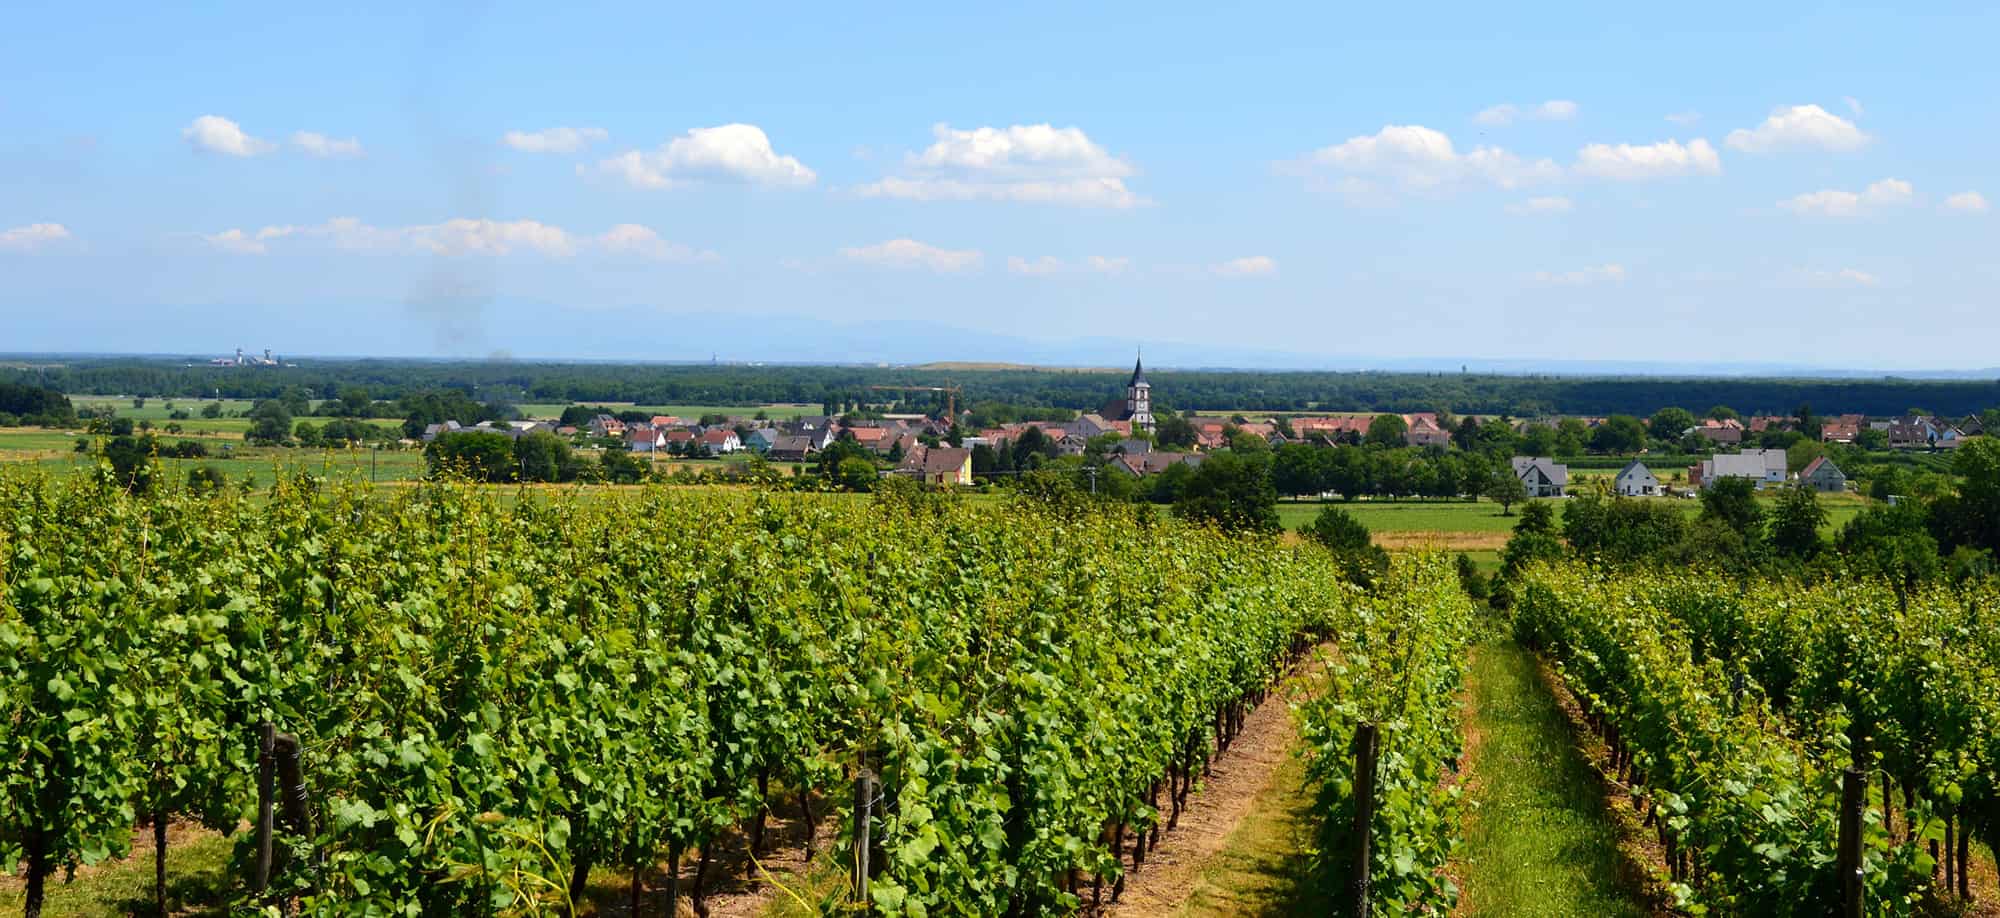 Les Vendanges: The Grape Harvest in France’s Loire Valley